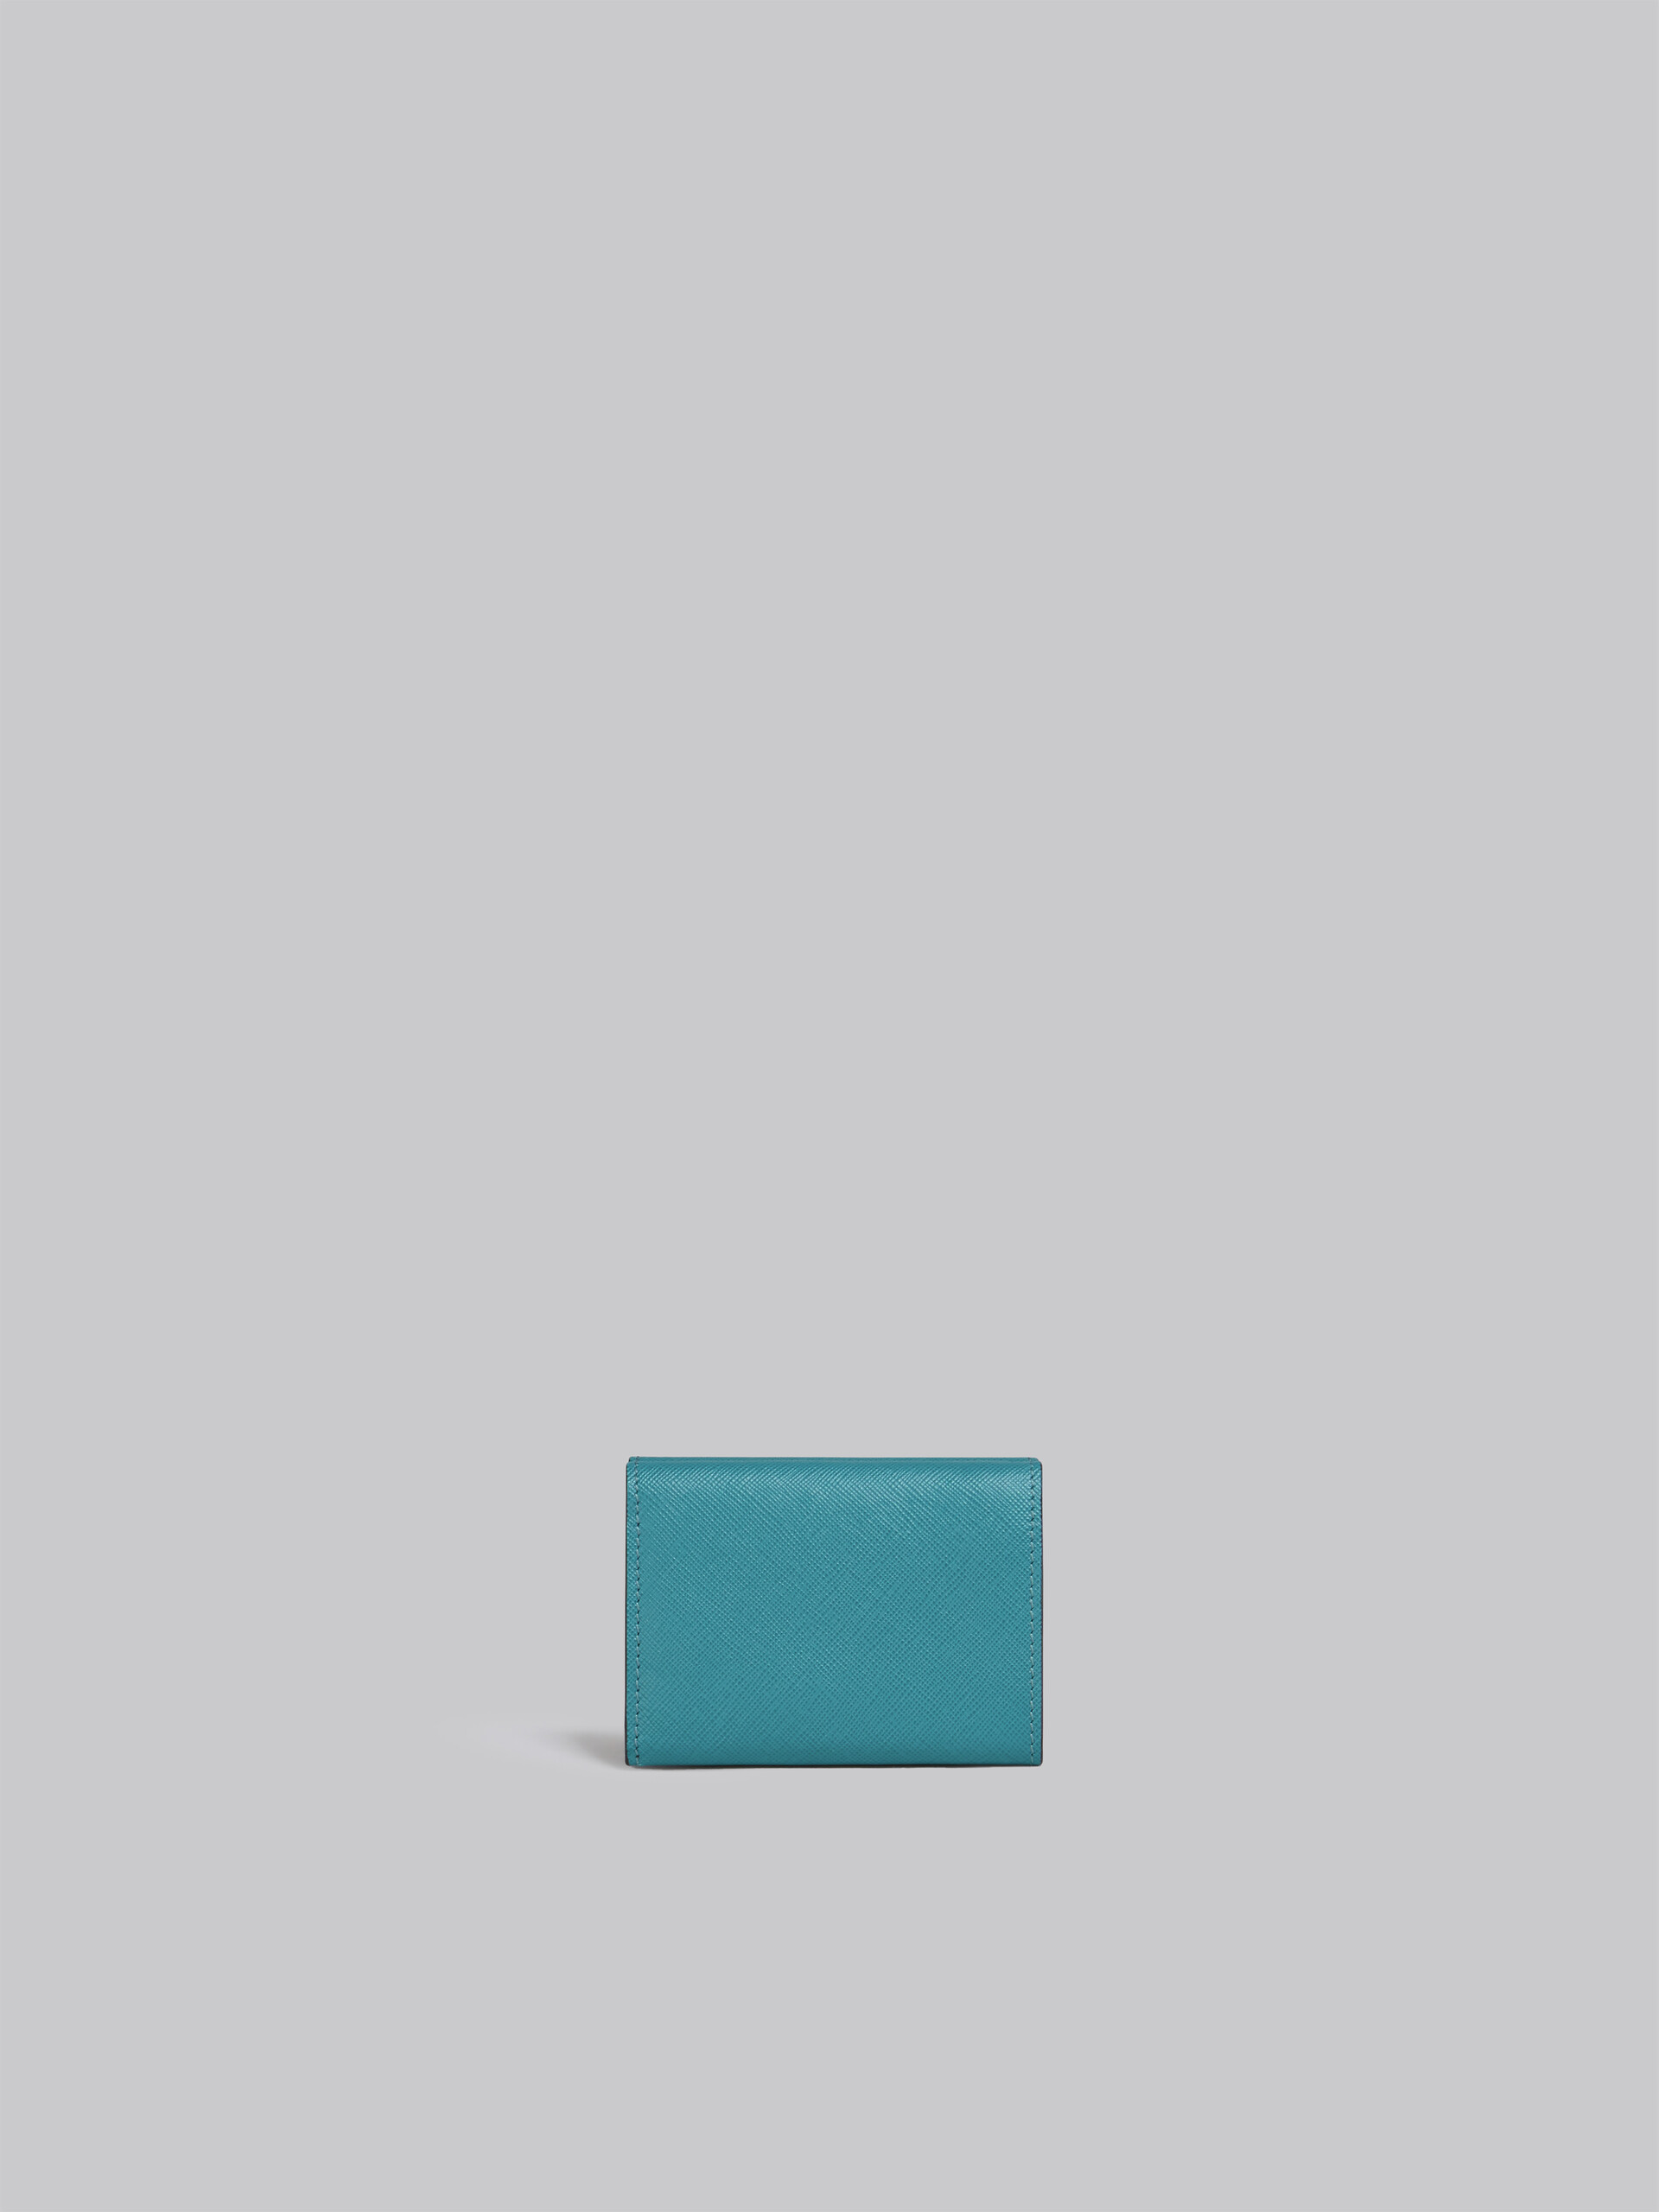 Portafoglio tri-fold in saffiano blu grigio bordeaux - Portafogli - Image 3